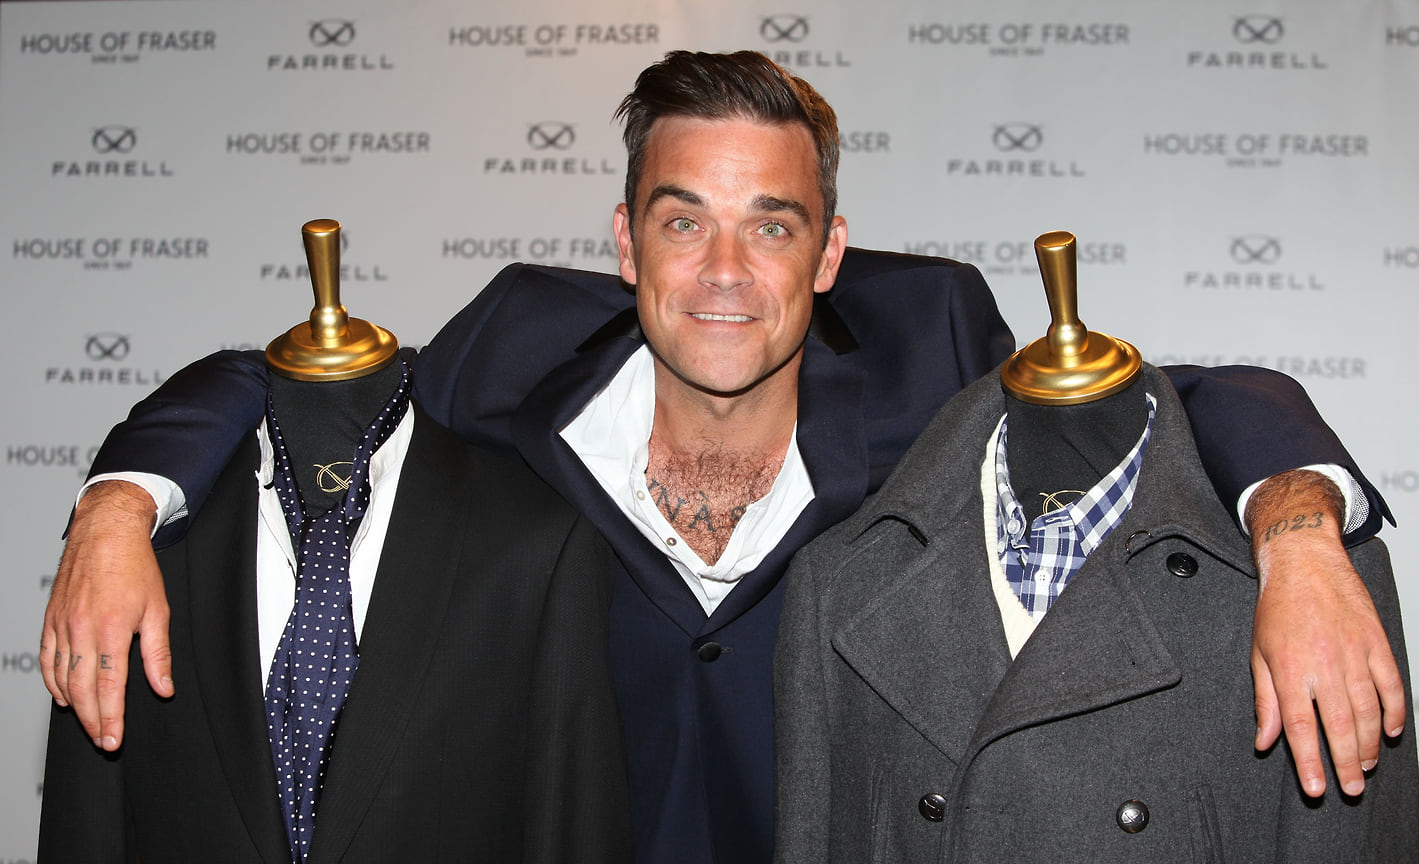 В 2011 году Уильямс запустил бренд одежды Farrell (на фото). Через какое-то время компания заявила о банкротстве, однако в 2014-м ее работа была возобновлена